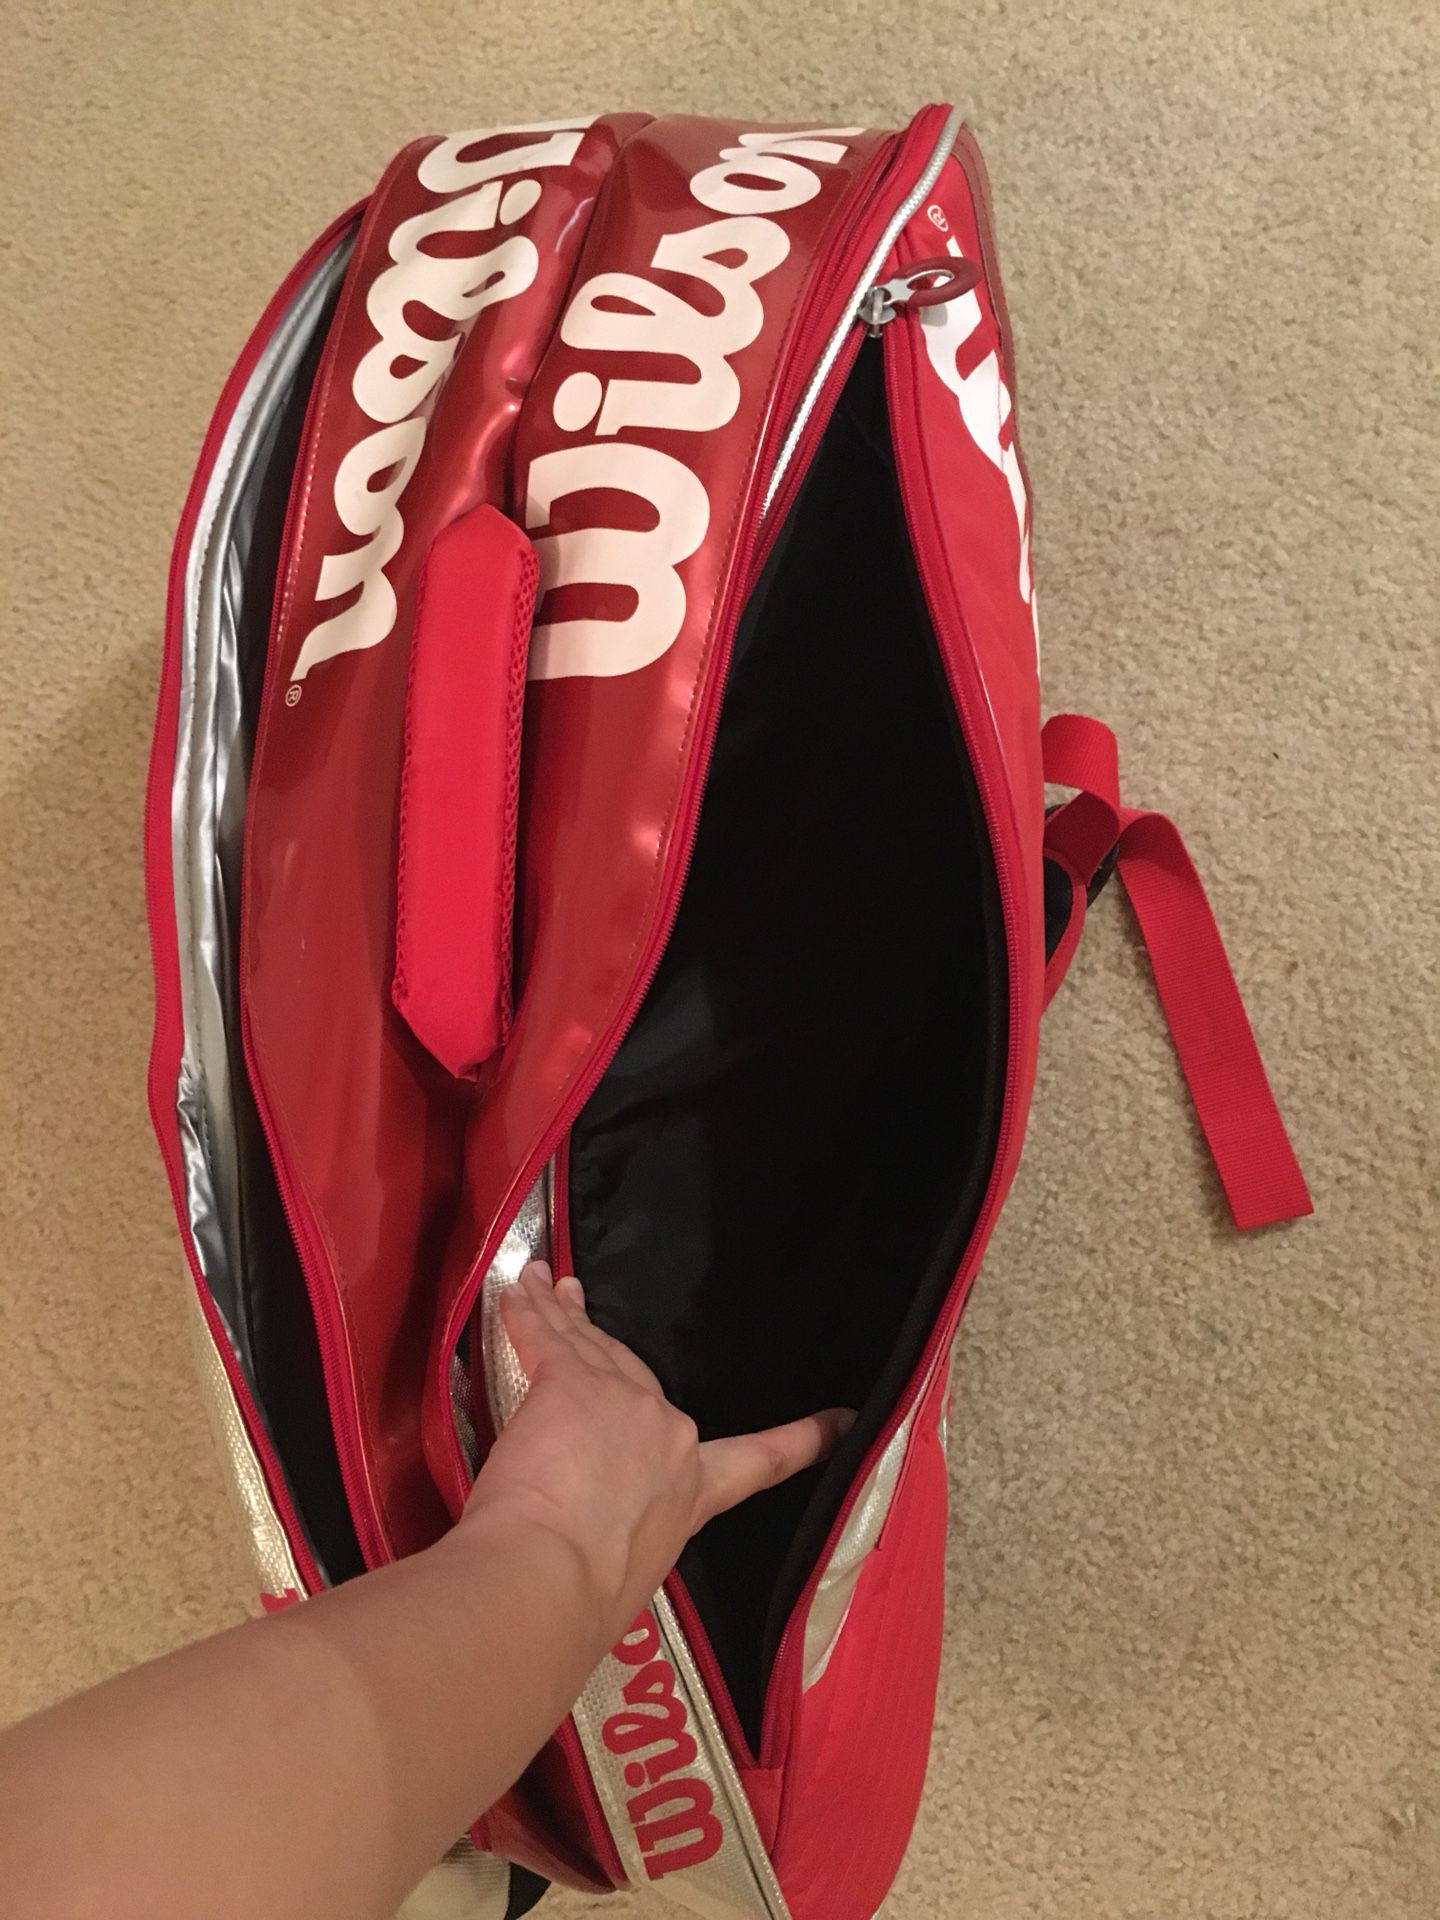 Wilson tennis racket bag pro tour+5 cans of penn tennis balls